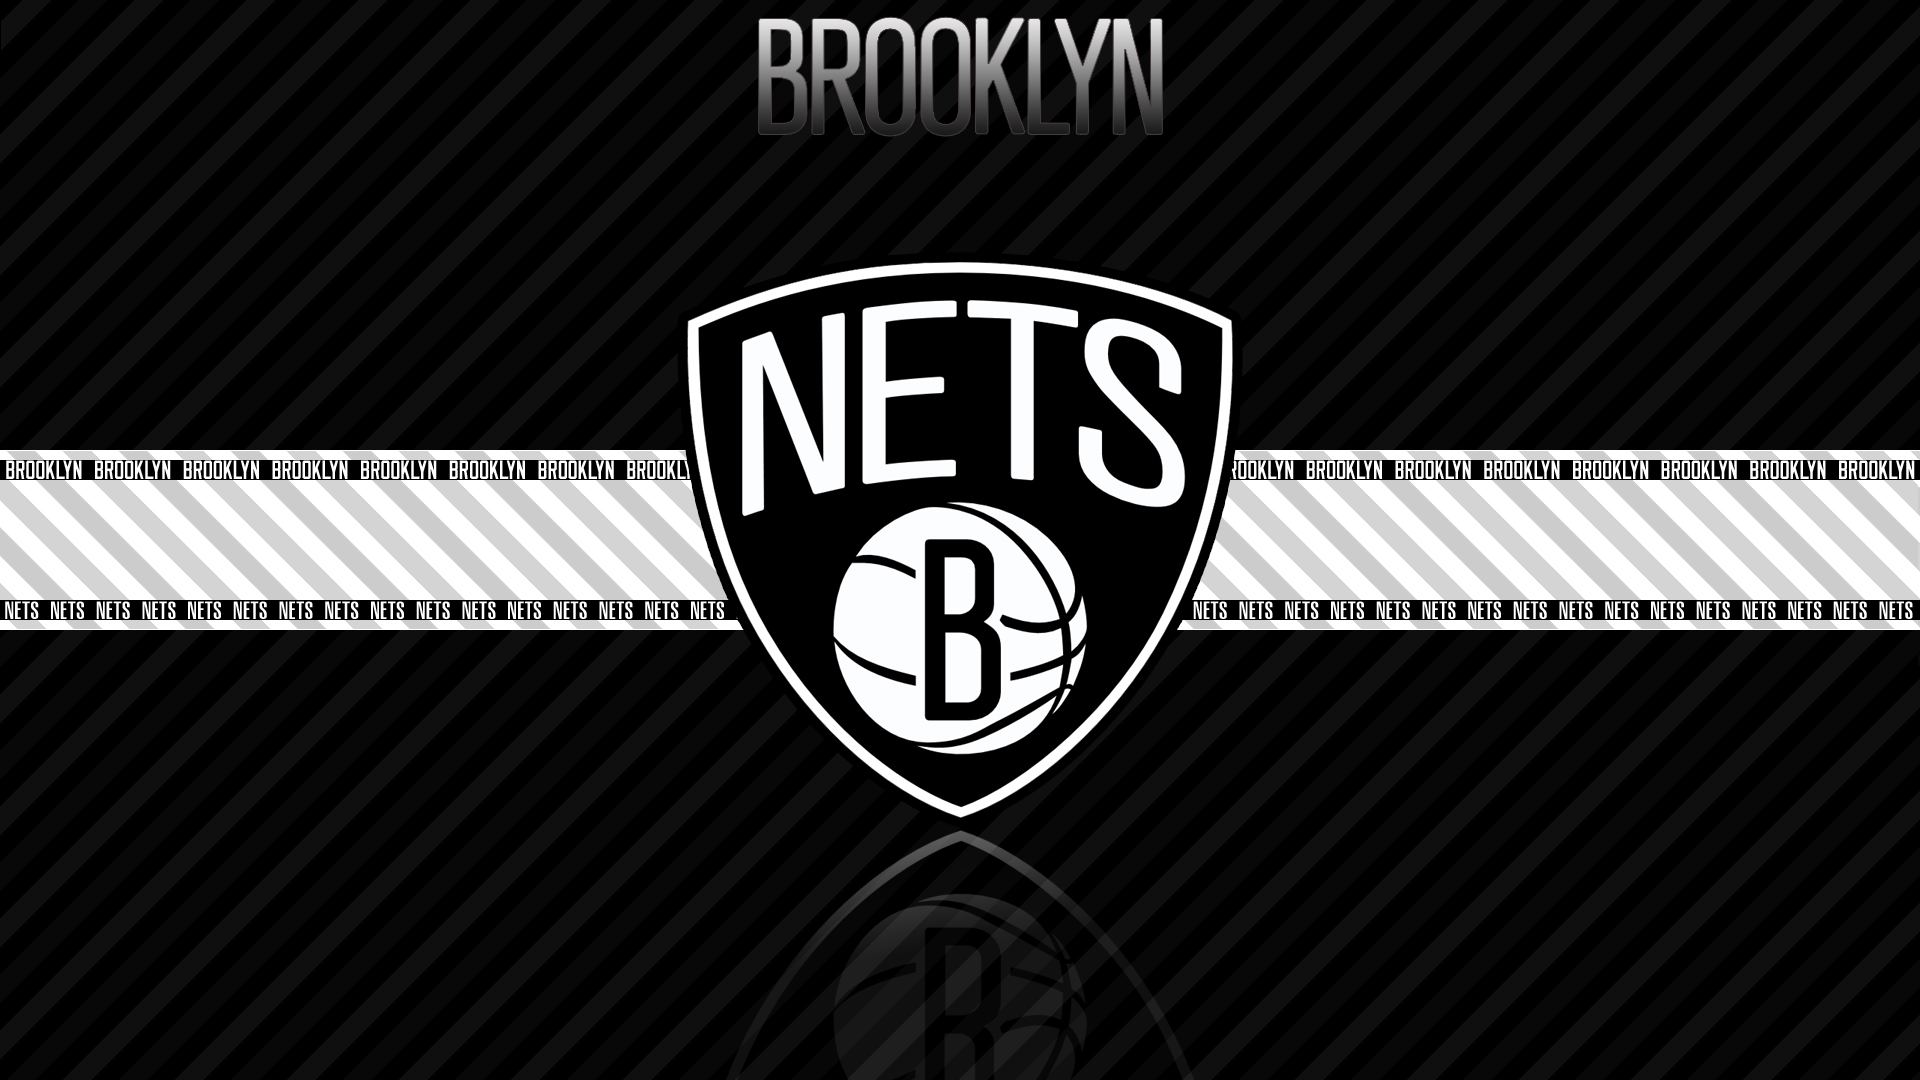 Laden Sie Brooklyn Netze HD-Desktop-Hintergründe herunter